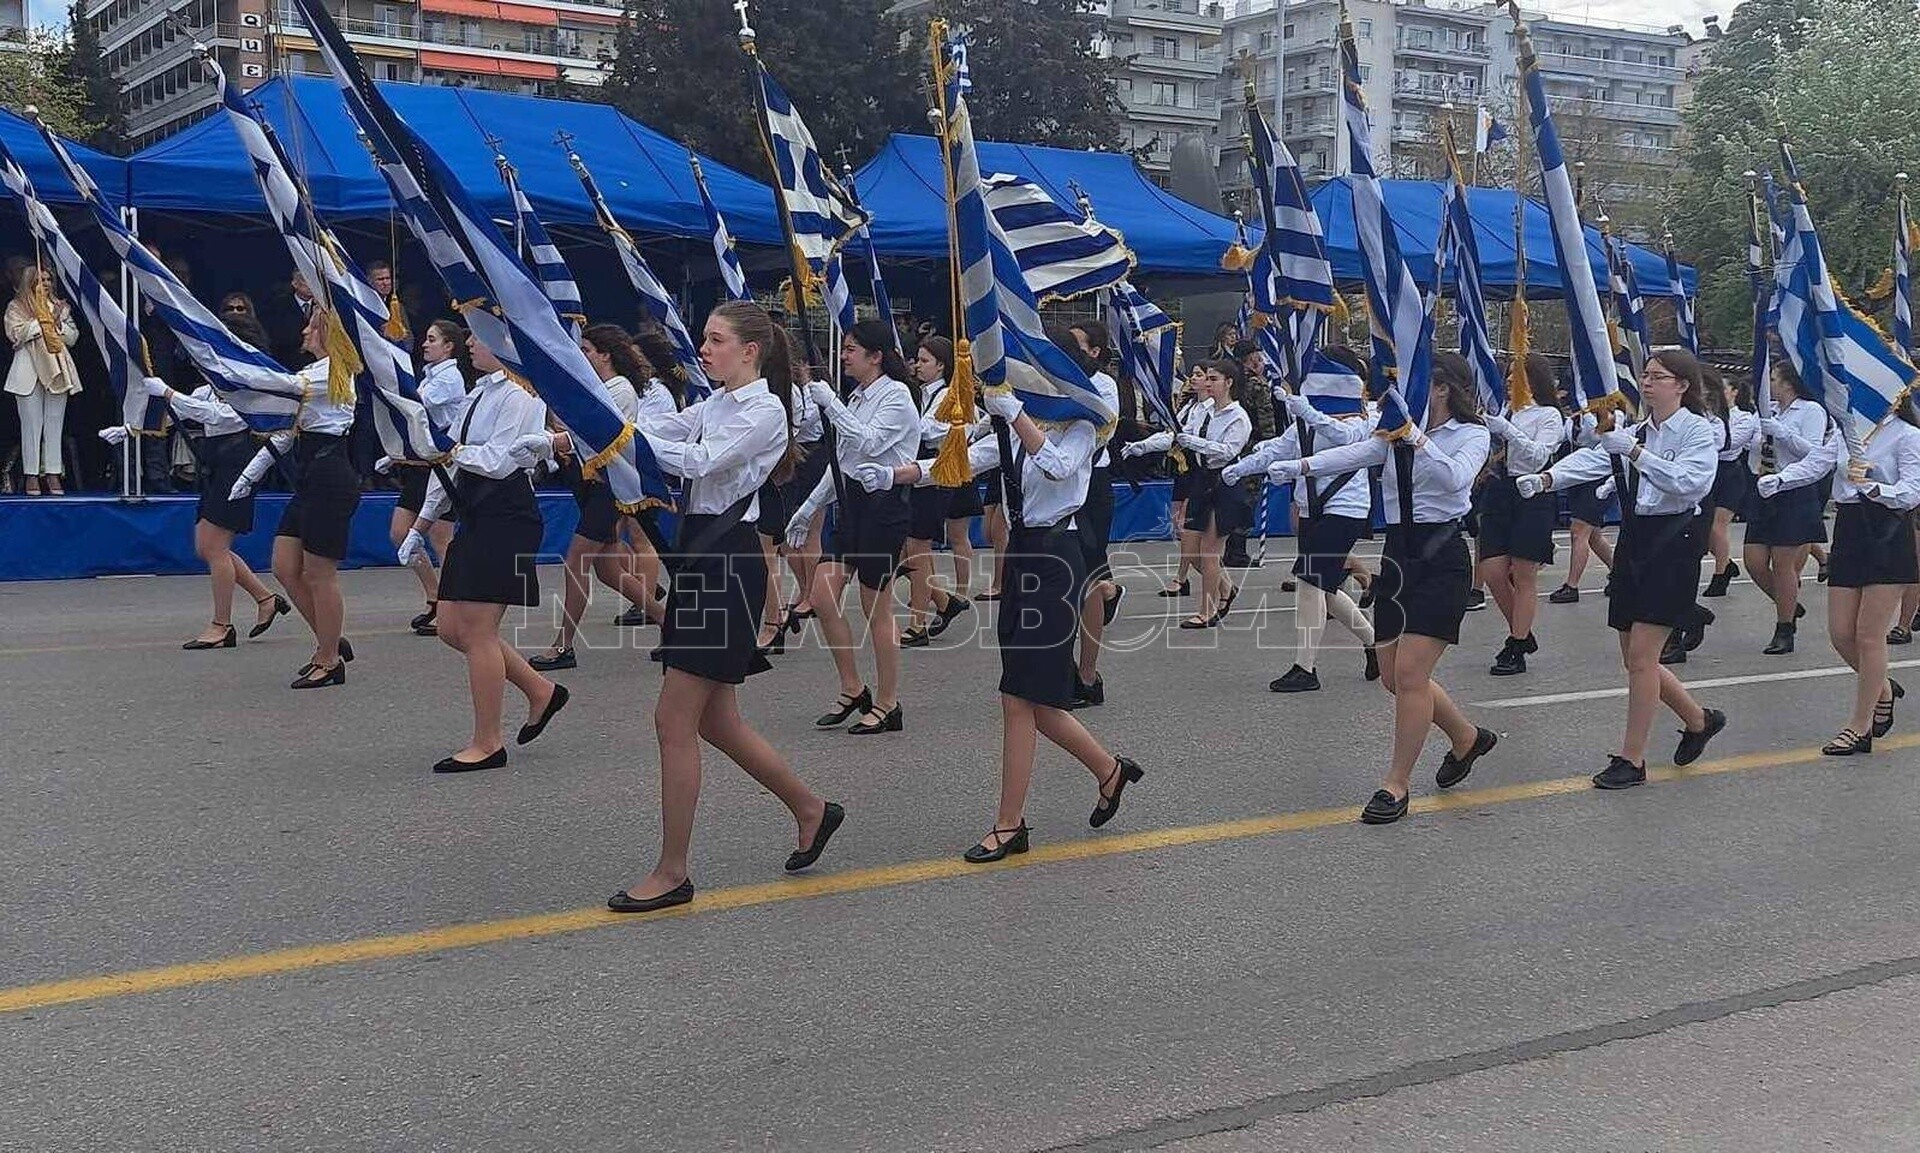 Θεσσαλονίκη: Άρχισε η μαθητική παρέλαση